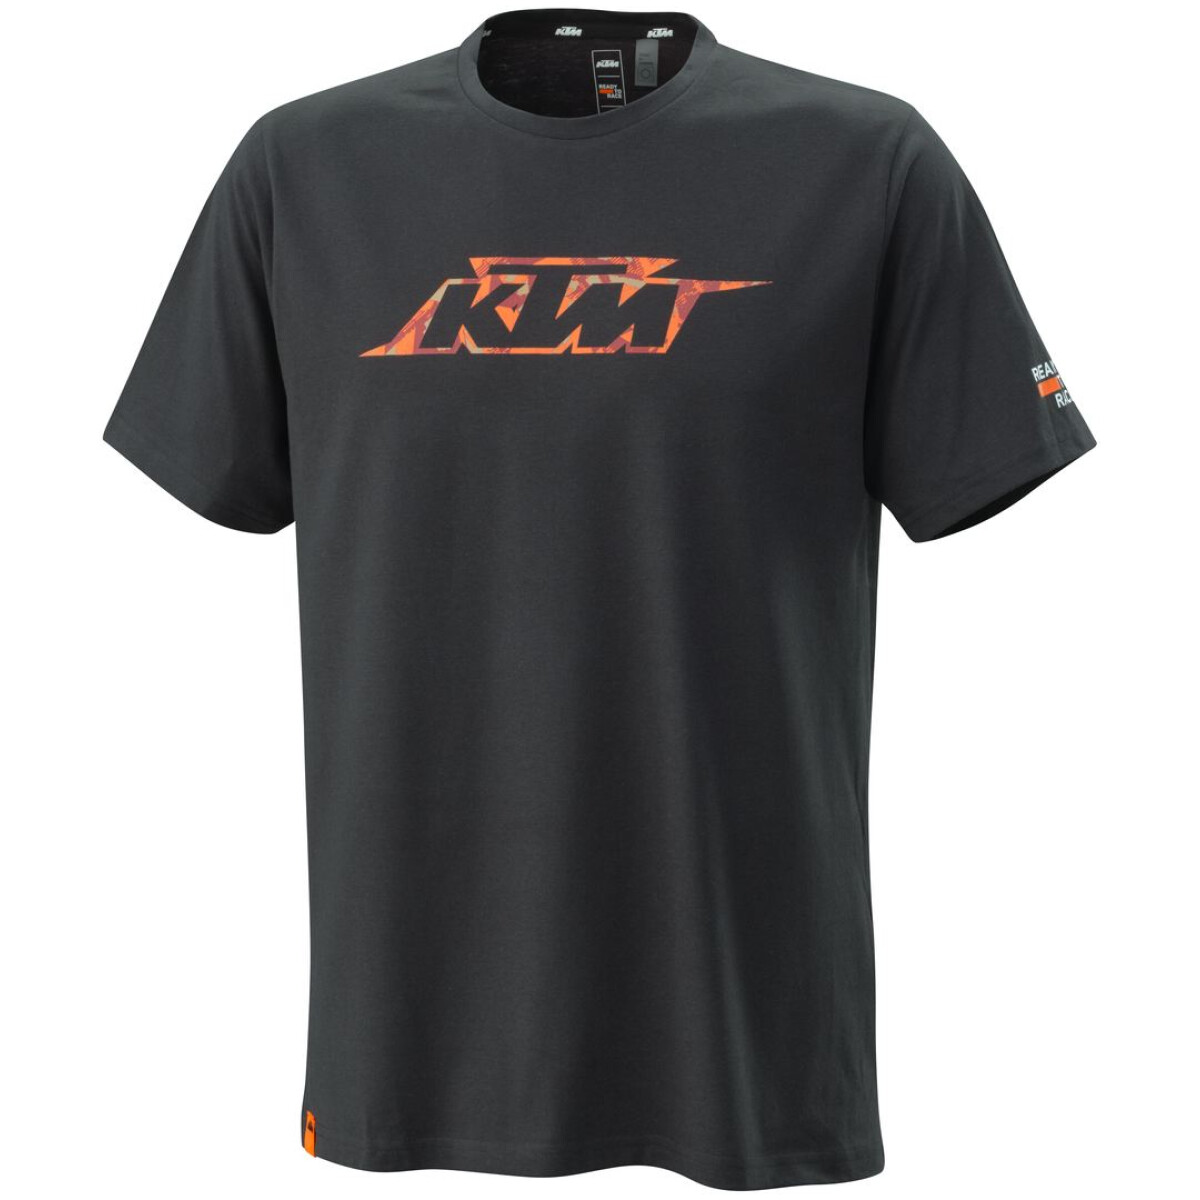 KTM Camo Tee Shirt